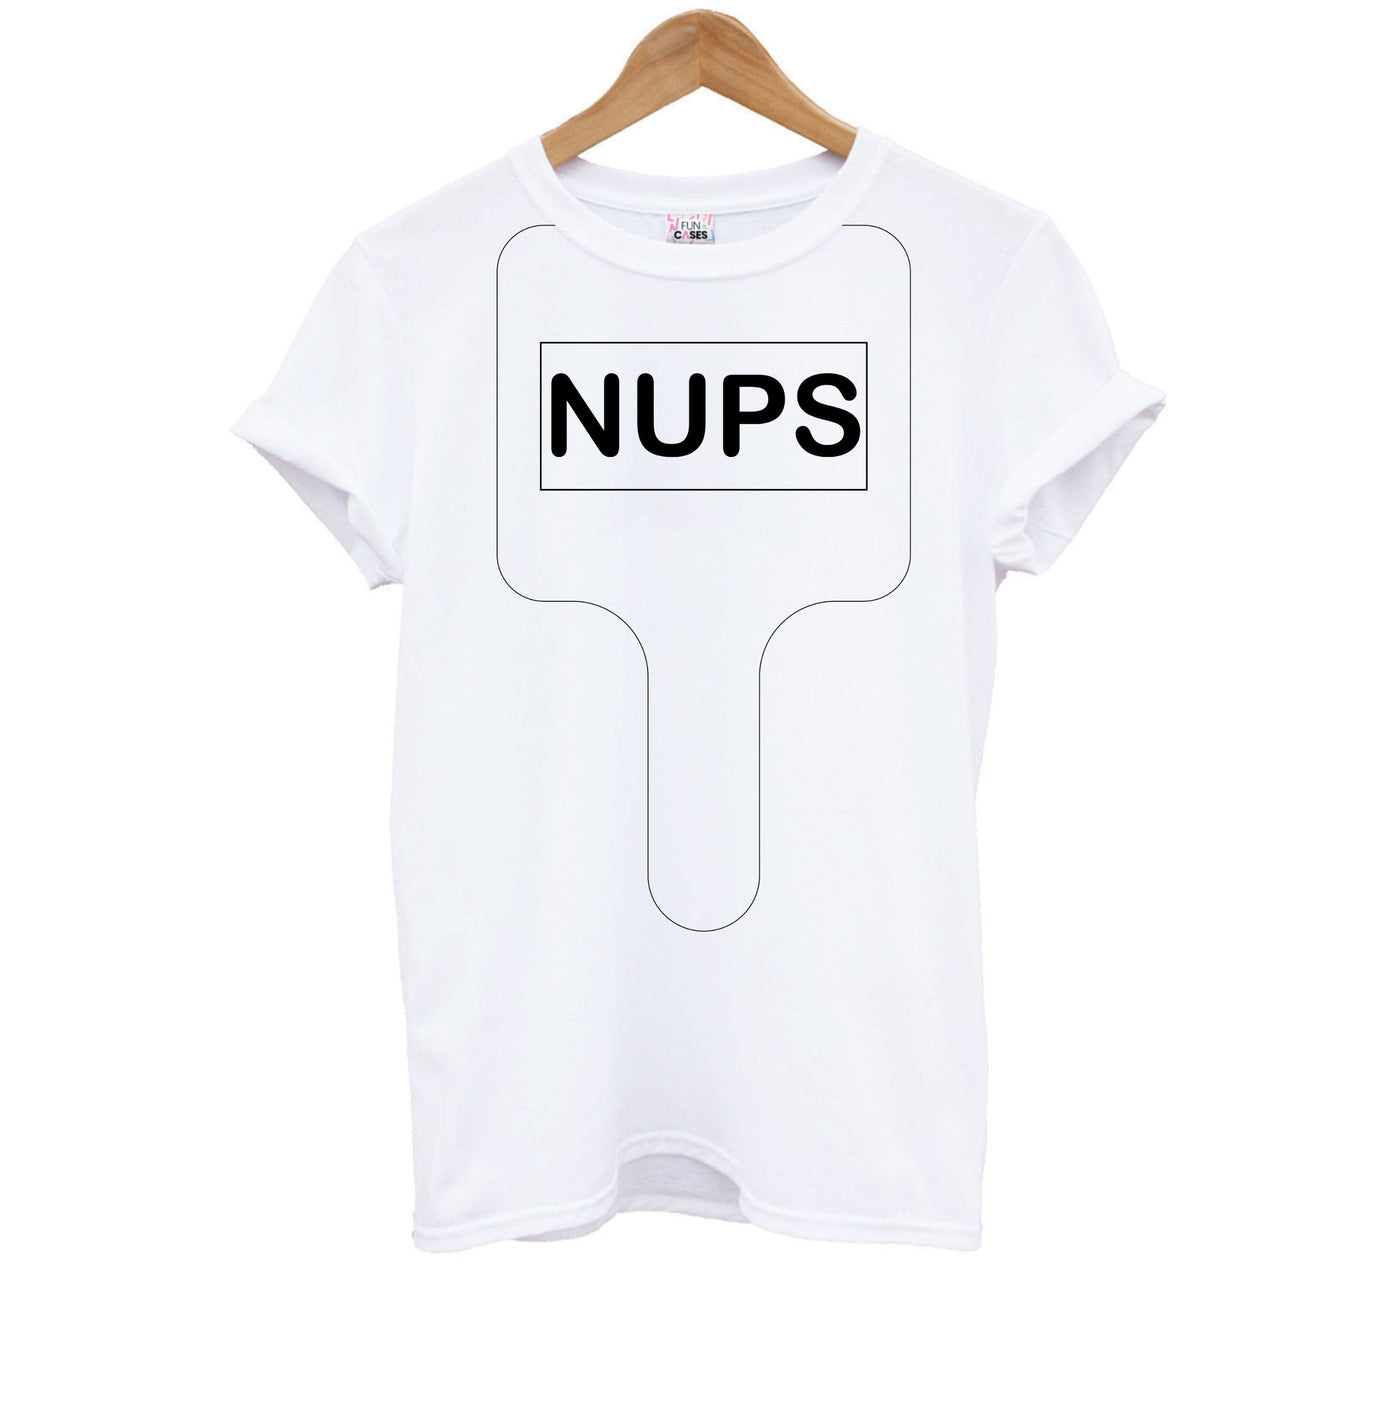 Nups - Brooklyn Nine-Nine Kids T-Shirt